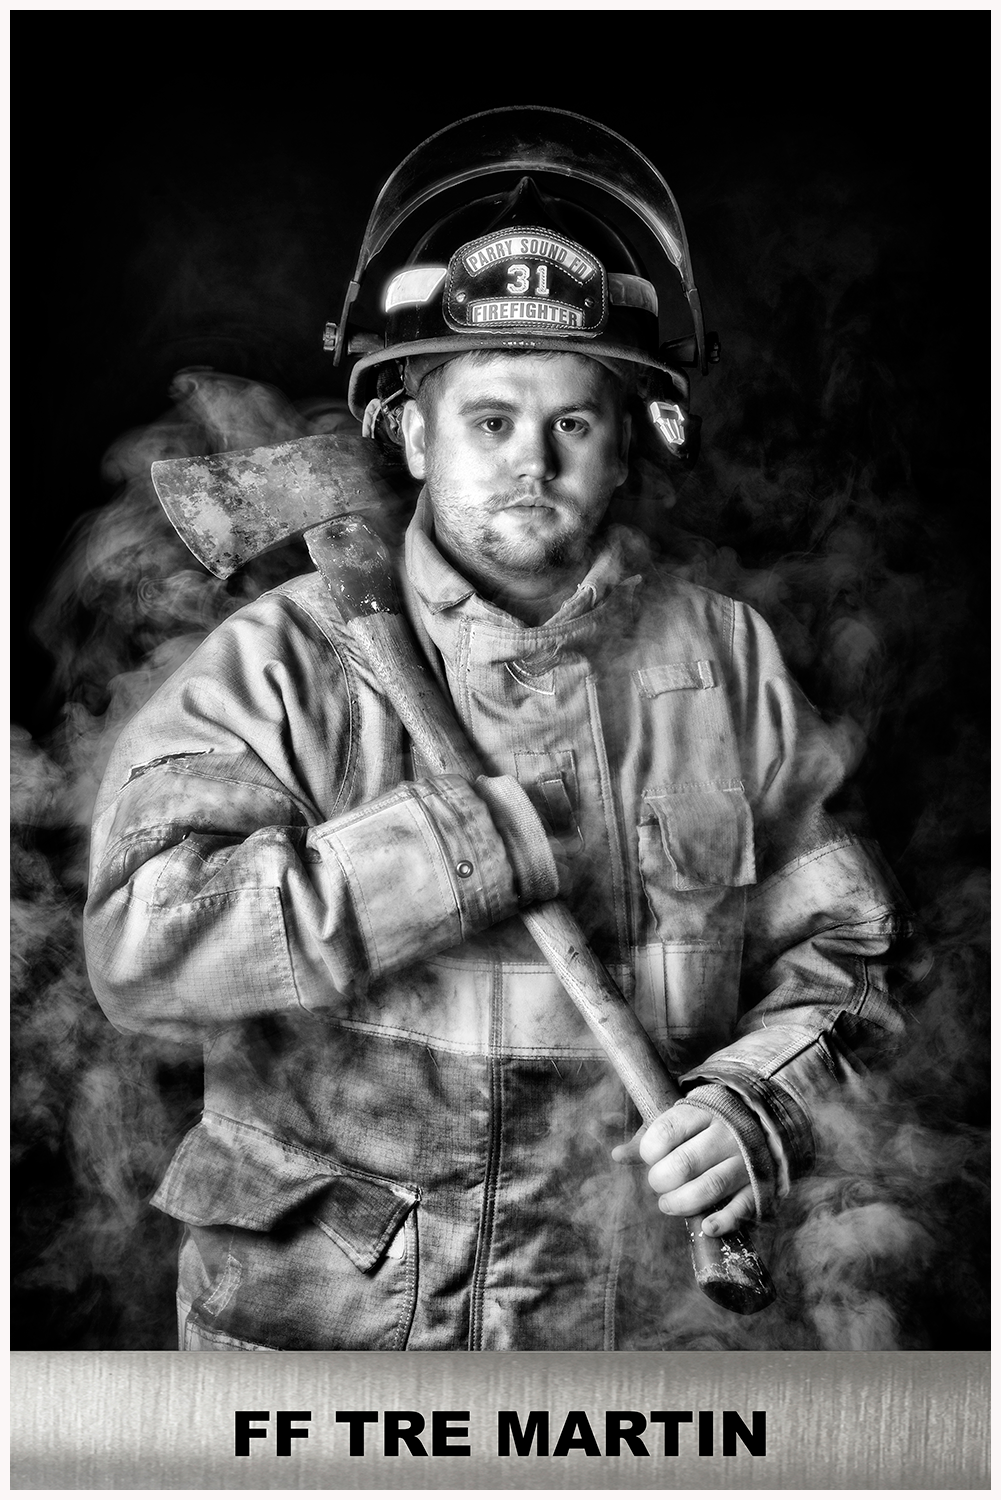 Firefighter Tre Martin